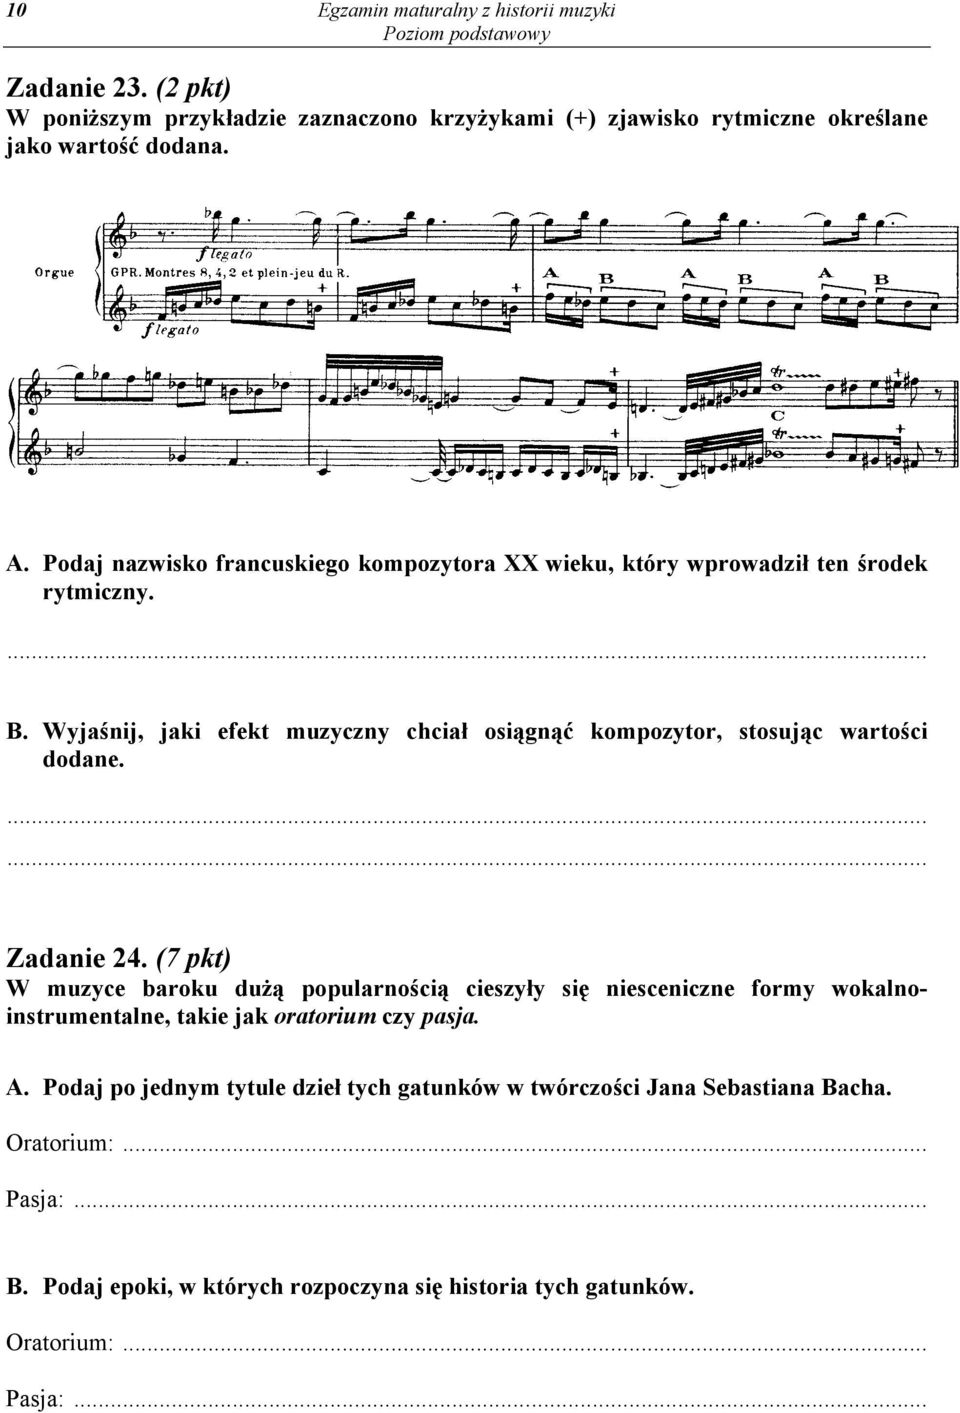 Wyjaśnij, jaki efekt muzyczny chciał osiągnąć kompozytor, stosując wartości dodane... Zadanie 24.